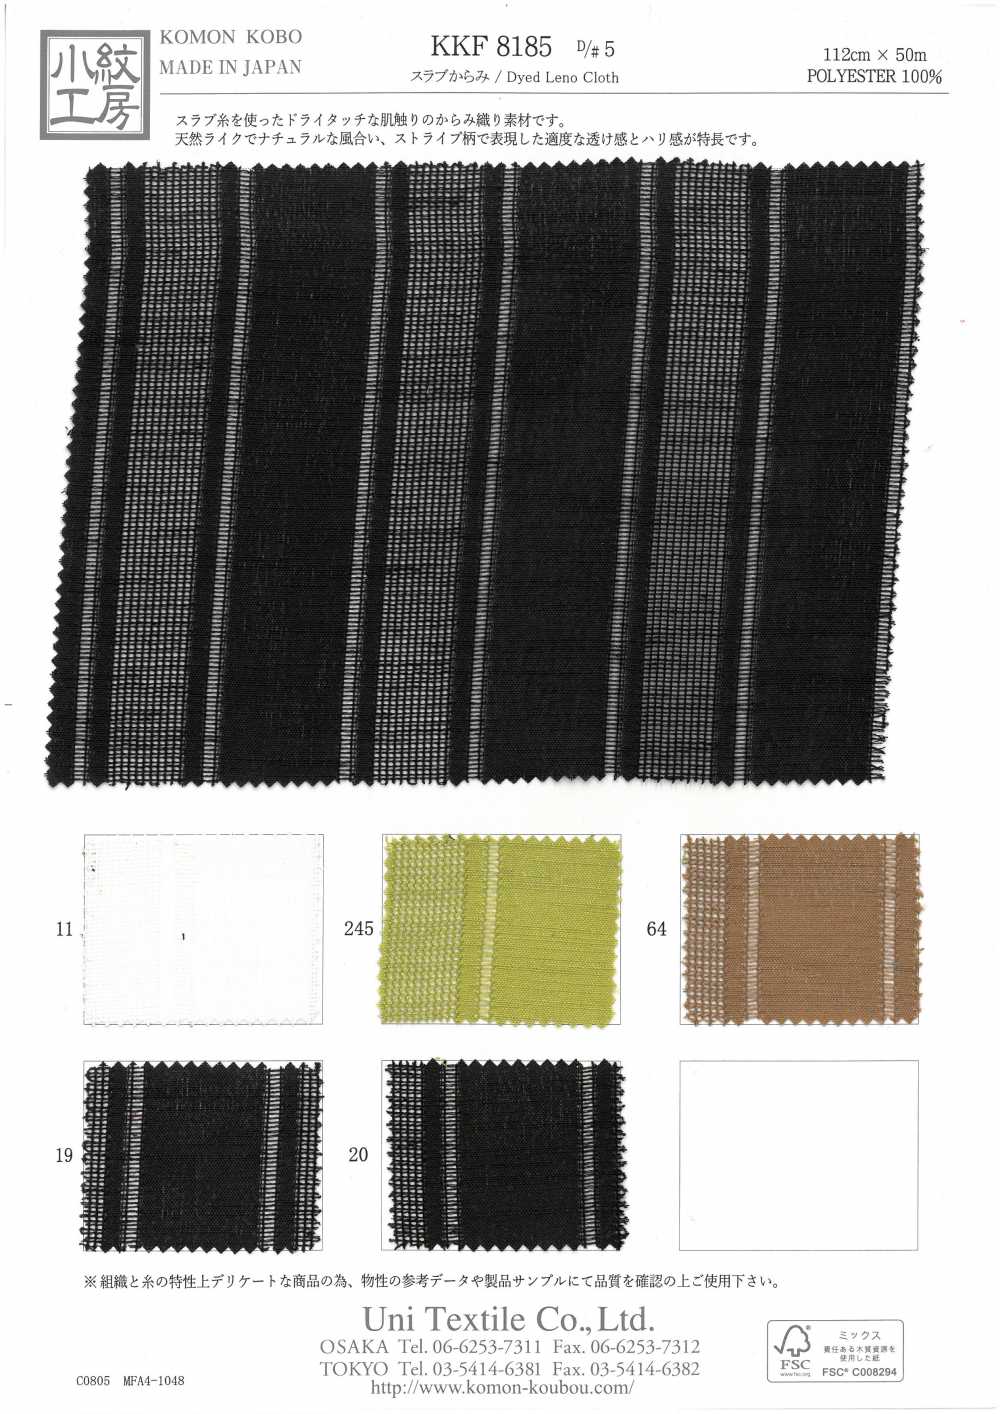 KKF8185-D/5 Von Der Platte[Textilgewebe] Uni Textile